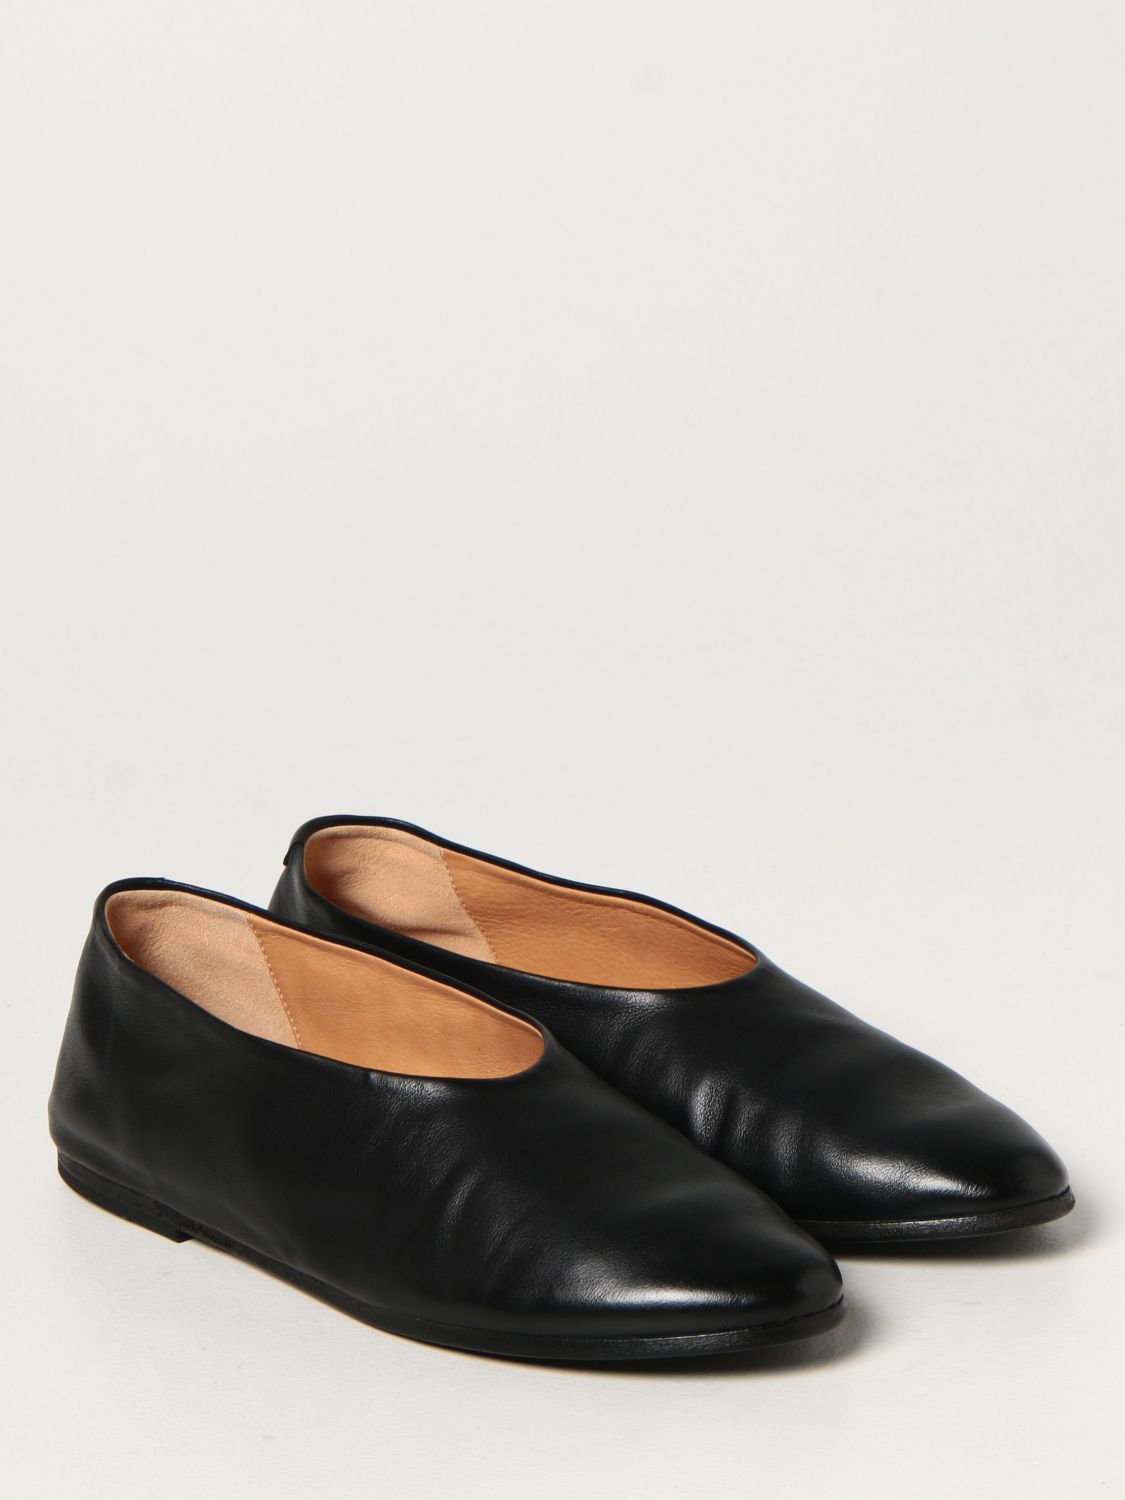 芭蕾平底鞋 Marsèll: Marsèll Coltellaccio 皮革芭蕾舞鞋 黑色 2